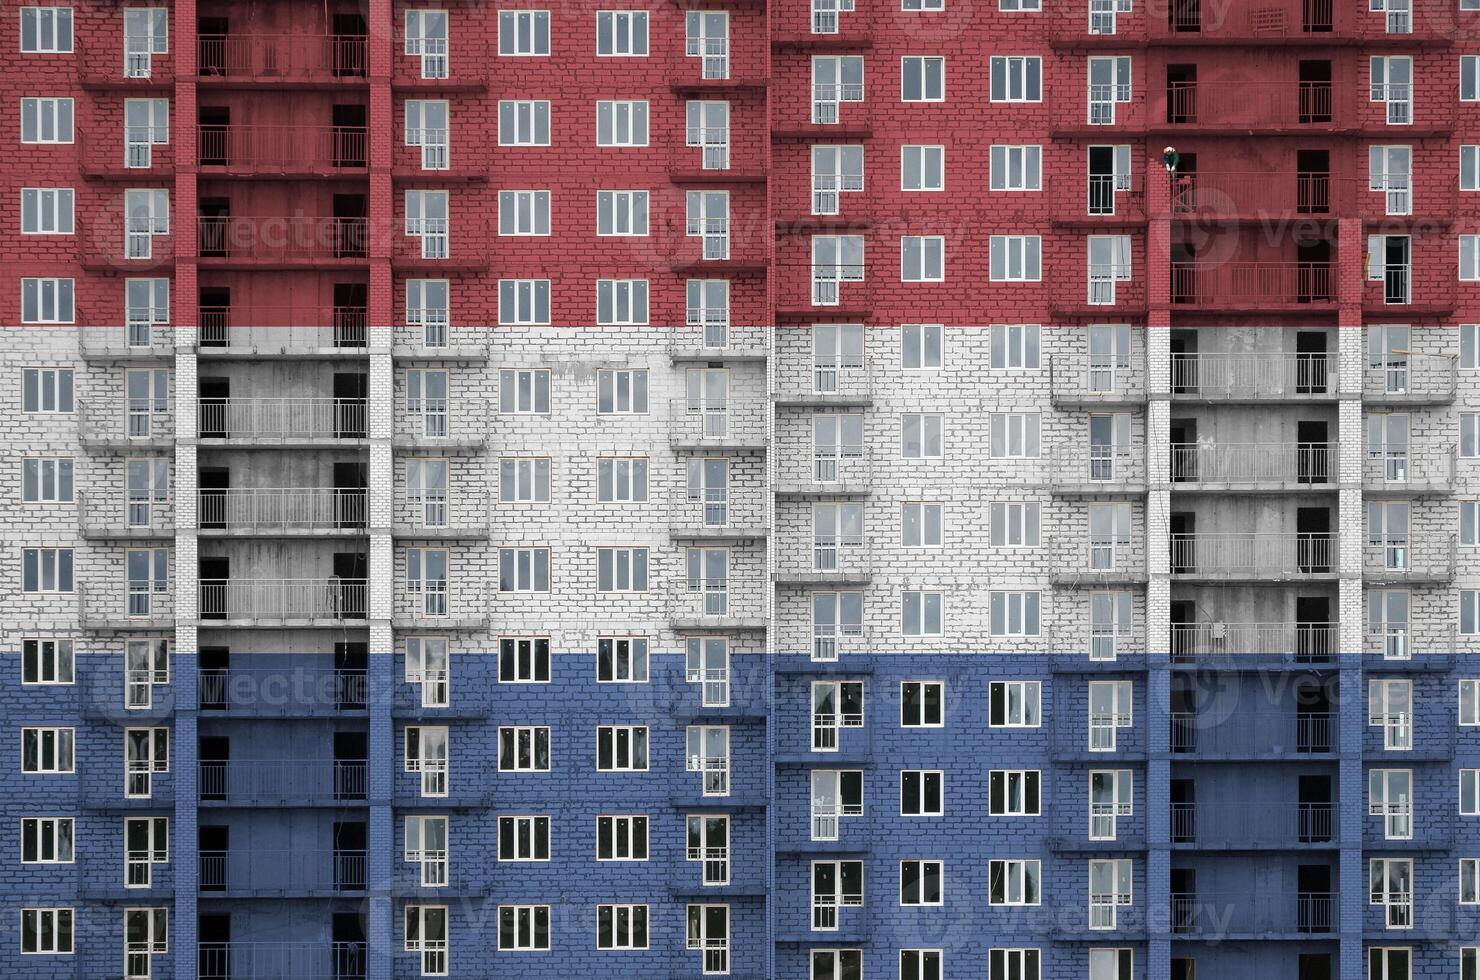 nederländerna flagga avbildad i måla färger på flera våningar bosatt byggnad under konstruktion. texturerad baner på tegel vägg bakgrund foto